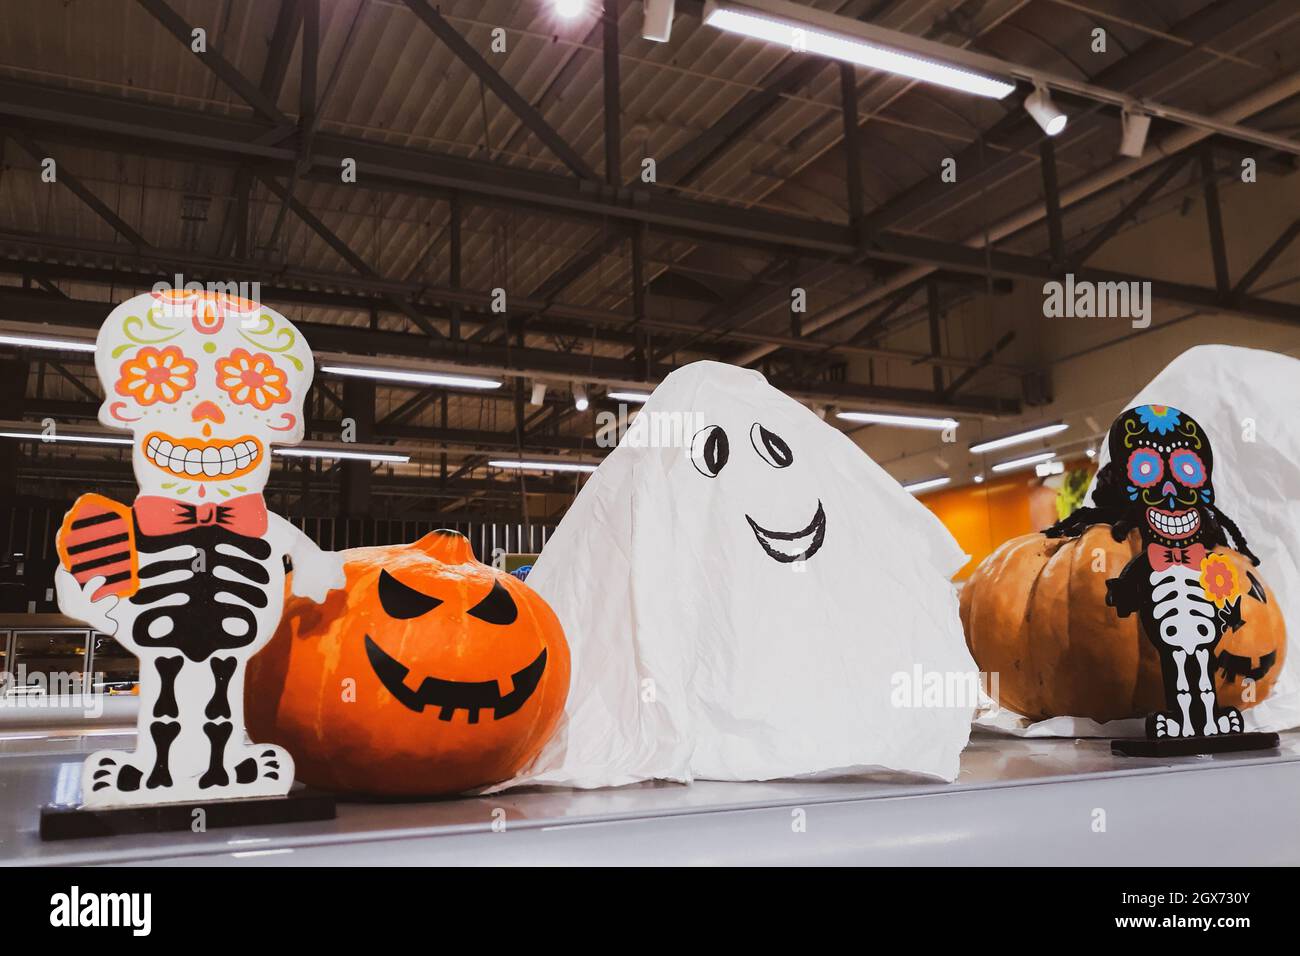 Décorations pour Halloween et le jour des morts au Mexique. Squelette et citrouilles fraîches. Décor effrayant pour célébrer Dia Los Muertos. Thanksgiving et harve Banque D'Images